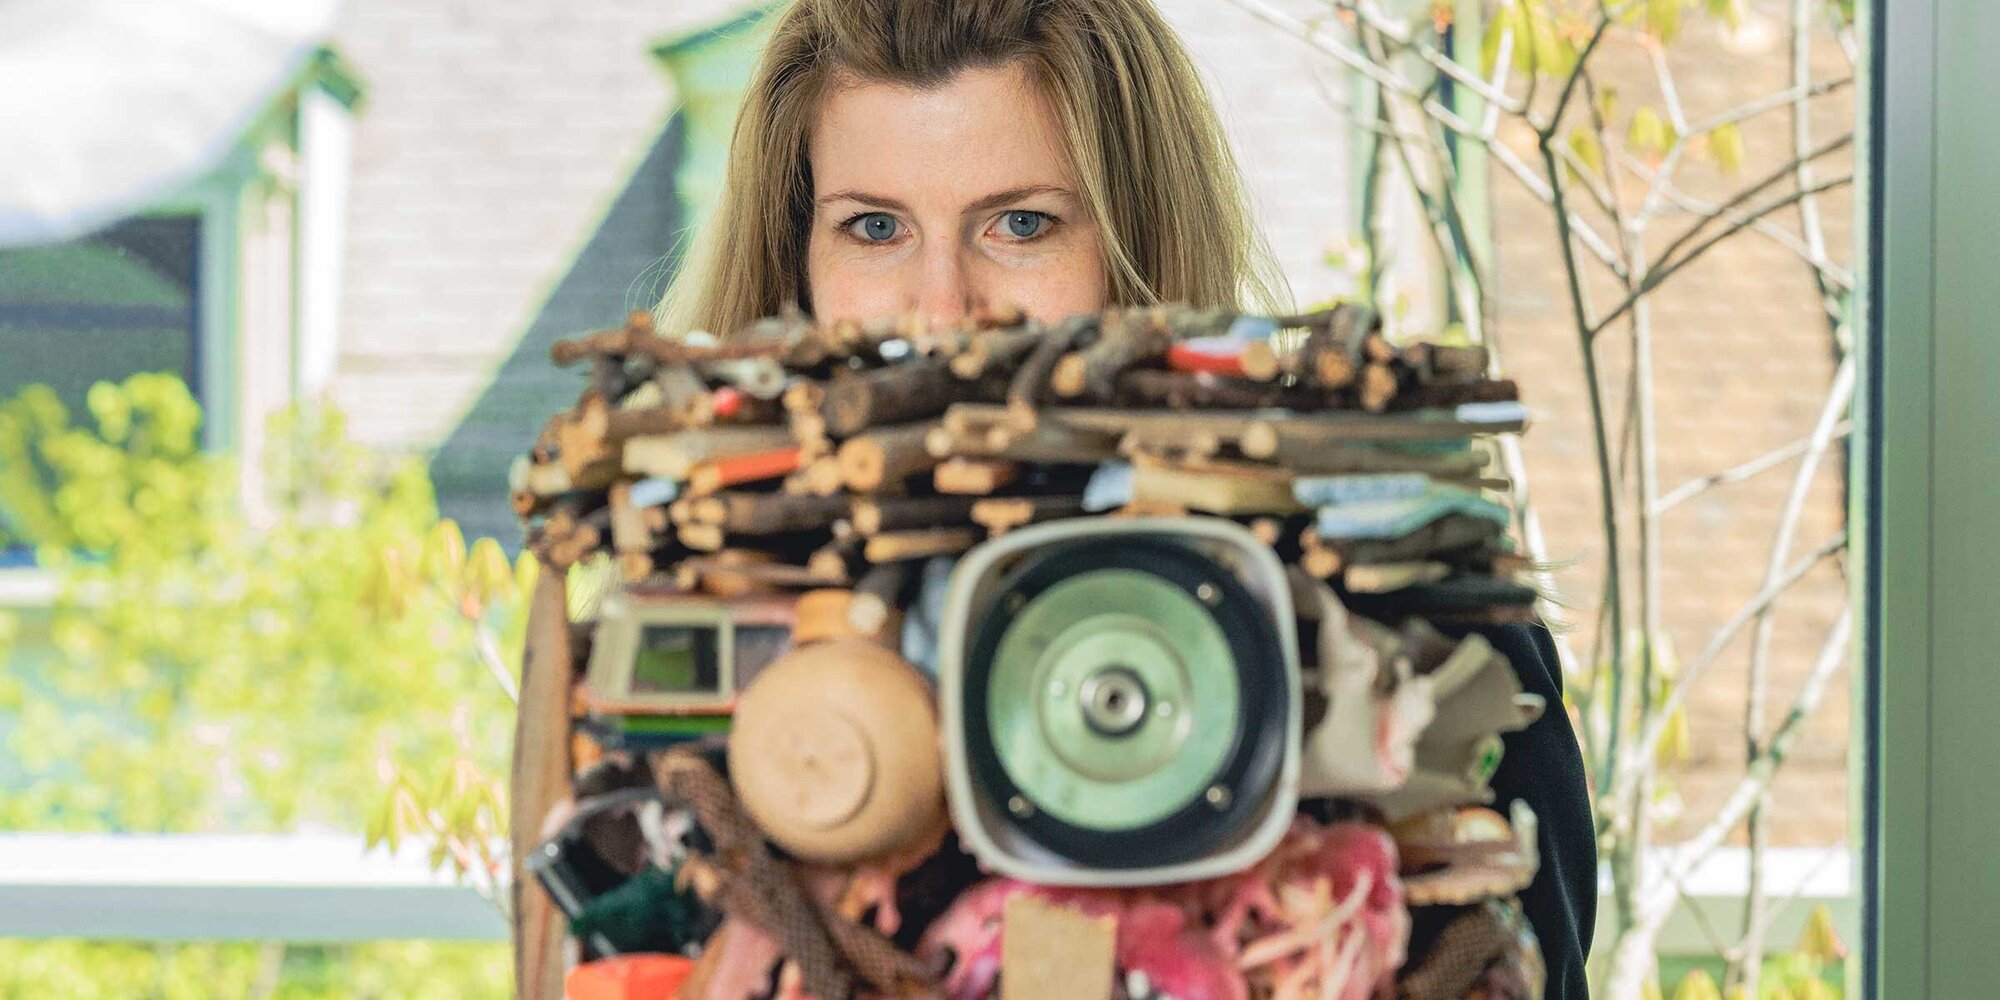 Irja Böhm von der Kunst Fachstelle mit dem Kunstwerk von Lutz&Guggisberg, Oh my God, I'm full of plans!, 2016, Mixed Media, 34 x 29 x 29 cm. Mit freundlicher Genehmigung der Künstler.